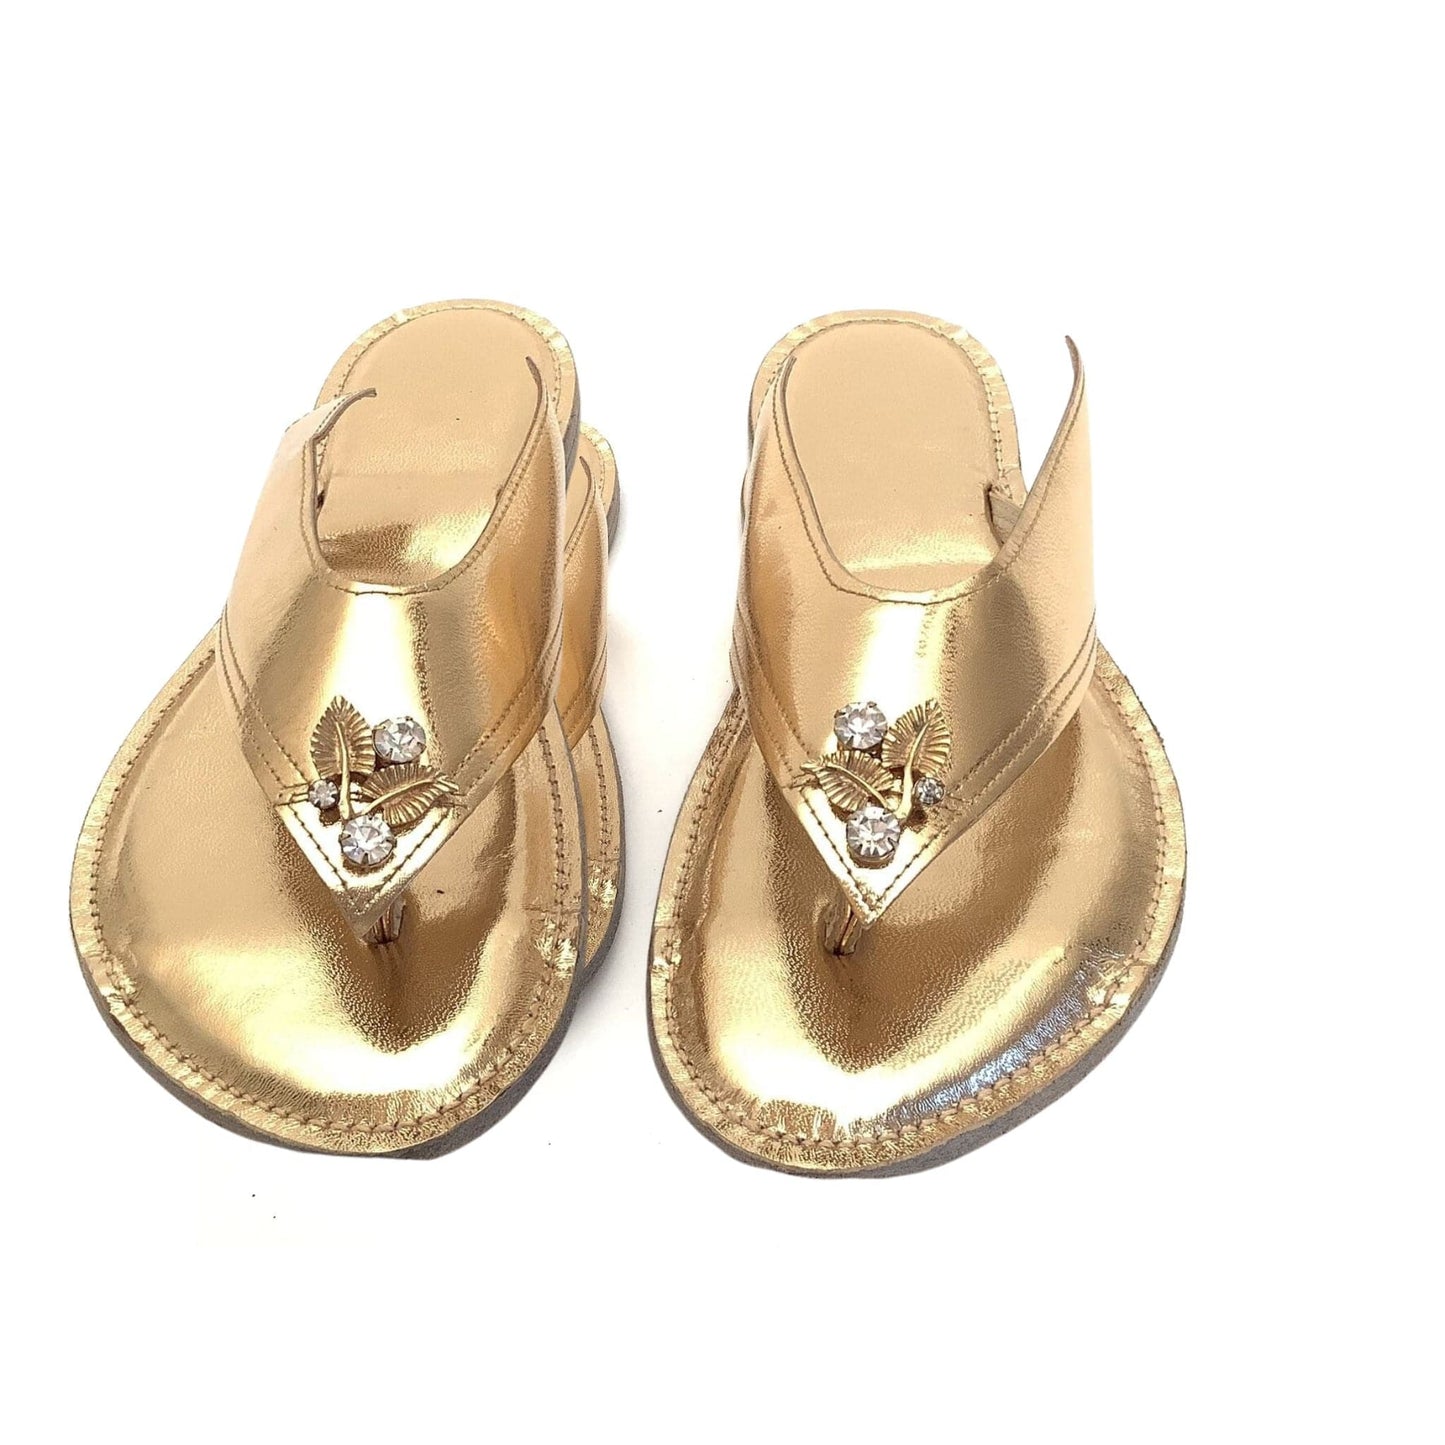 1940s Art Deco Sandals 9 / Gold / Vintage 1940s